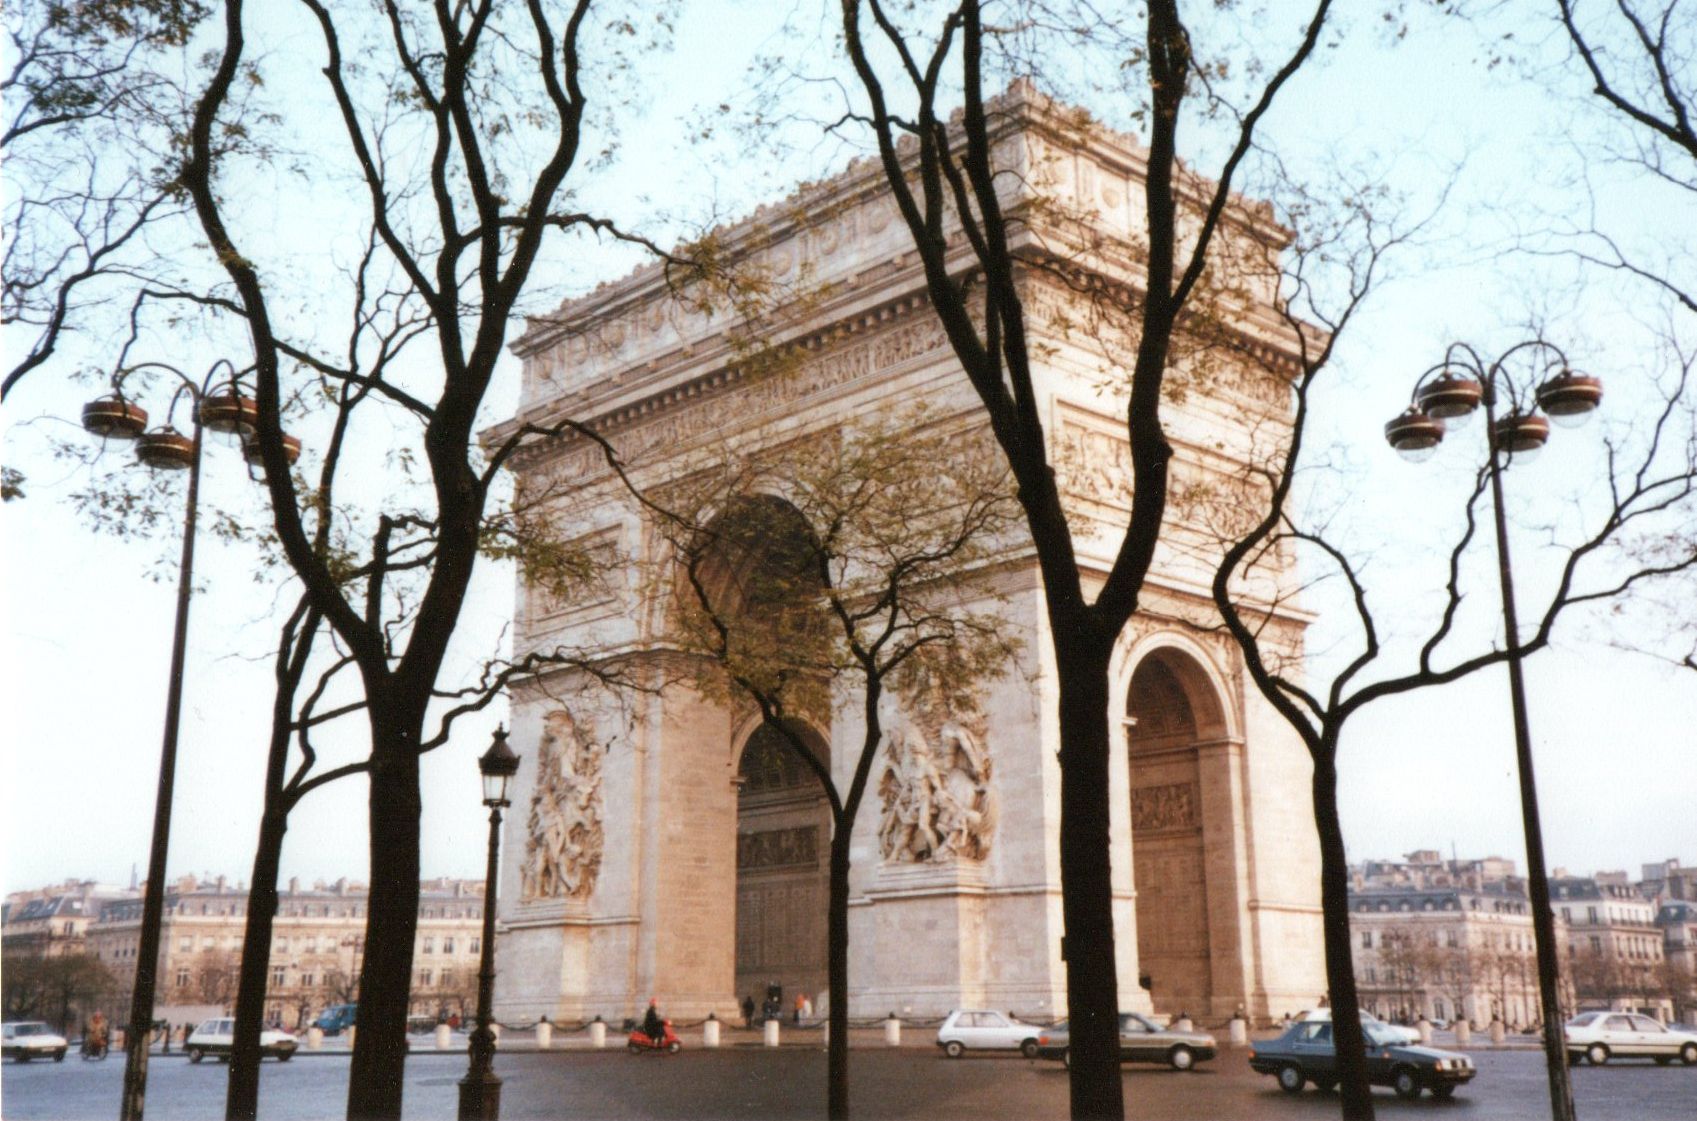 Arc de Triumphe in Paris